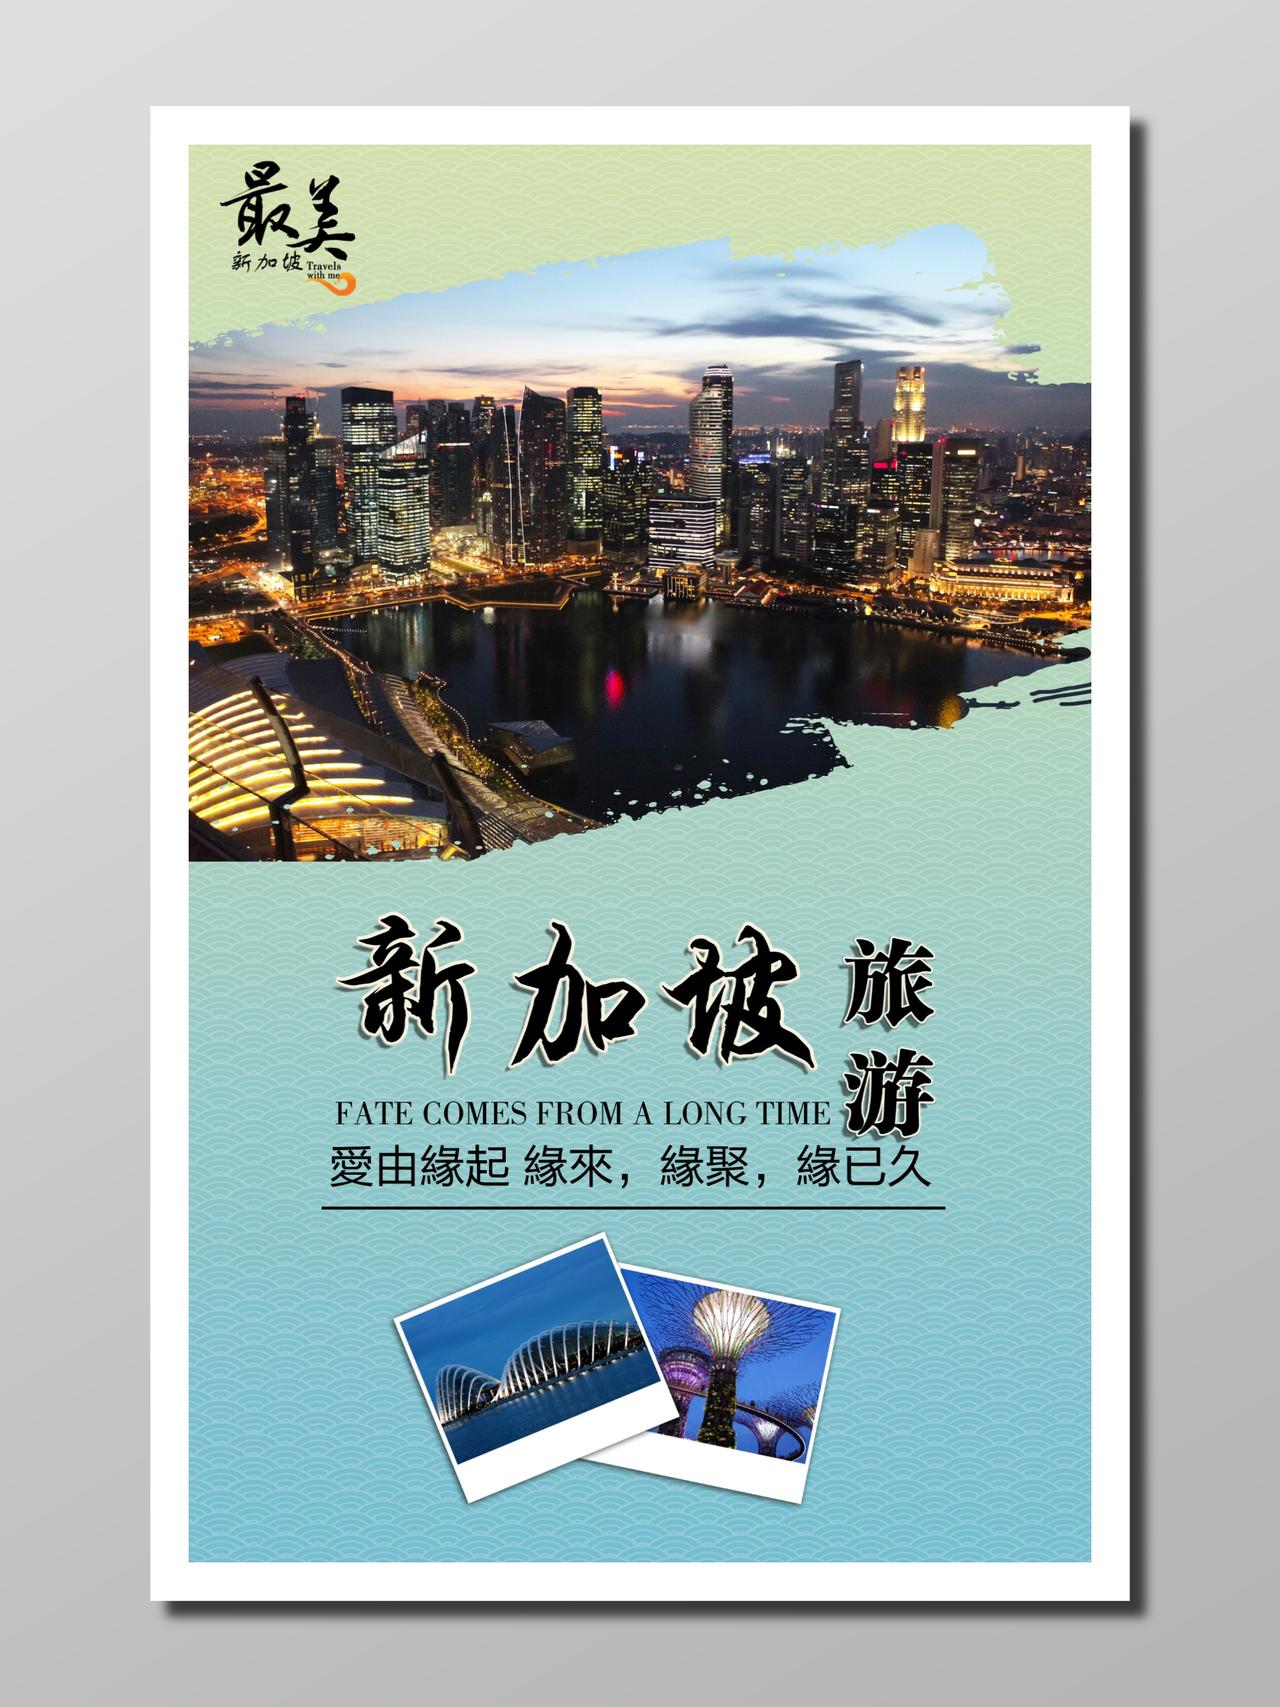 旅游新加坡旅行青色高度浪漫唯美最美新加坡缘聚城市宣传海报设计